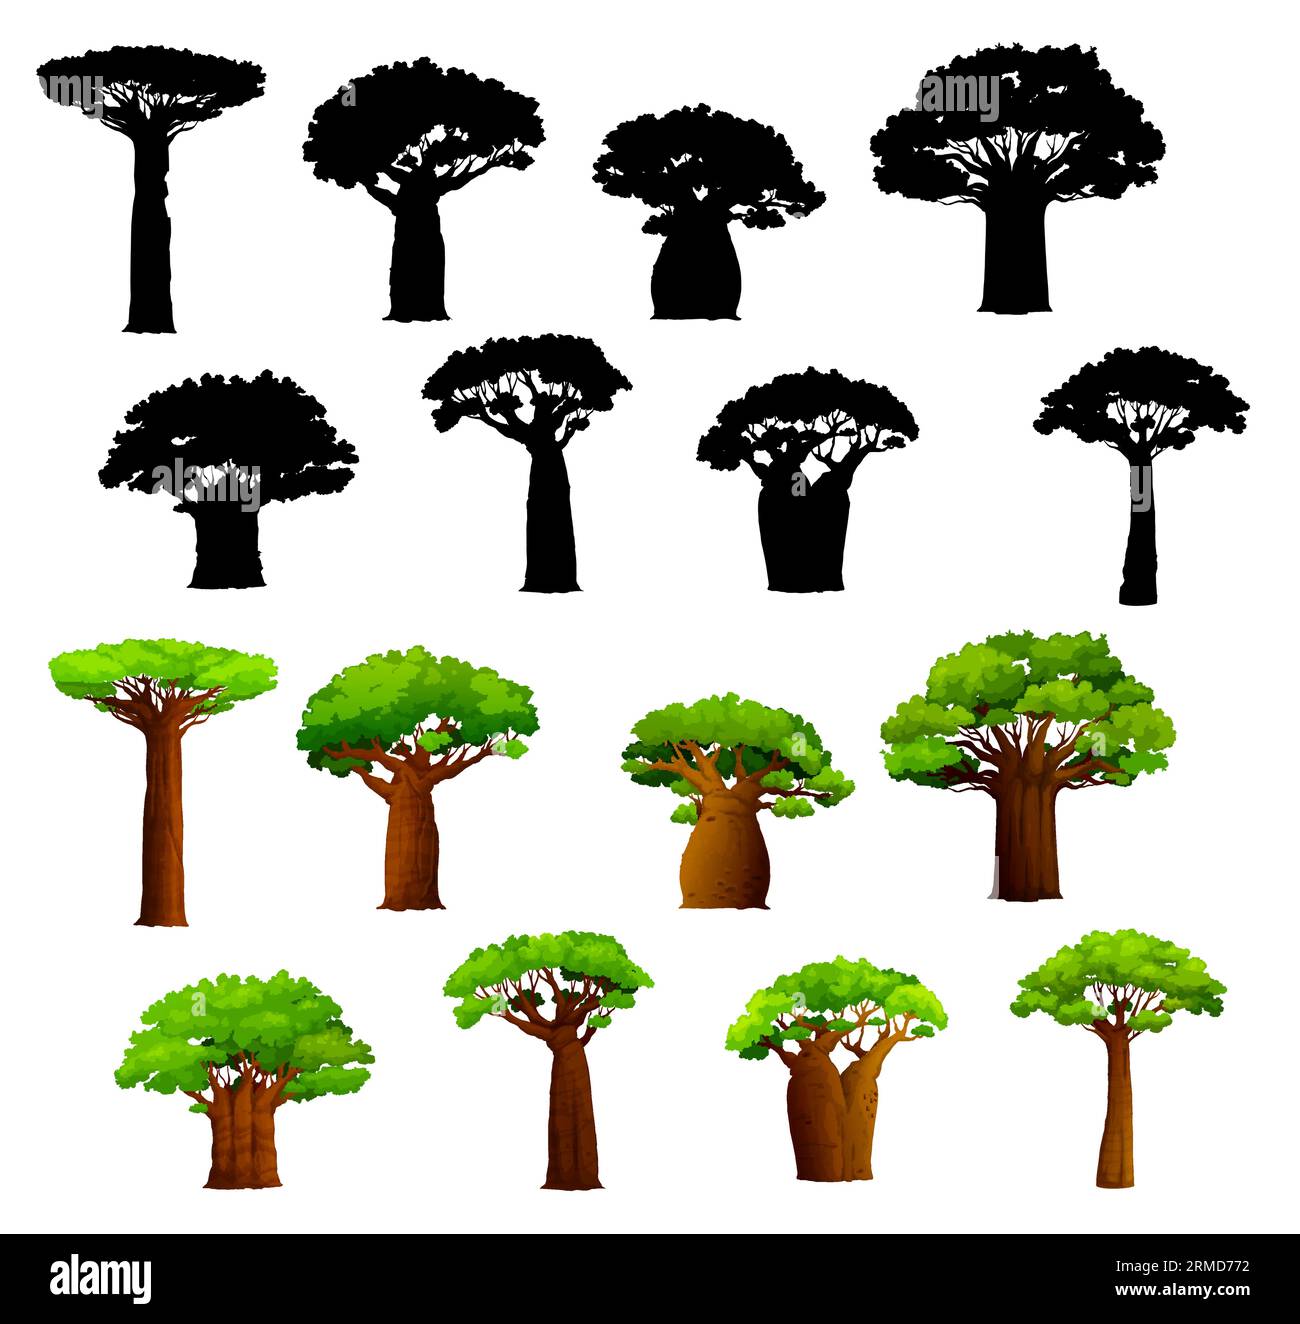 Baobabs africains et silhouettes. Vecteur baobabs de savane africaine avec de larges troncs et des feuilles vertes. Ensemble d'arbres tropicaux isolés, résistance à la sécheresse Illustration de Vecteur